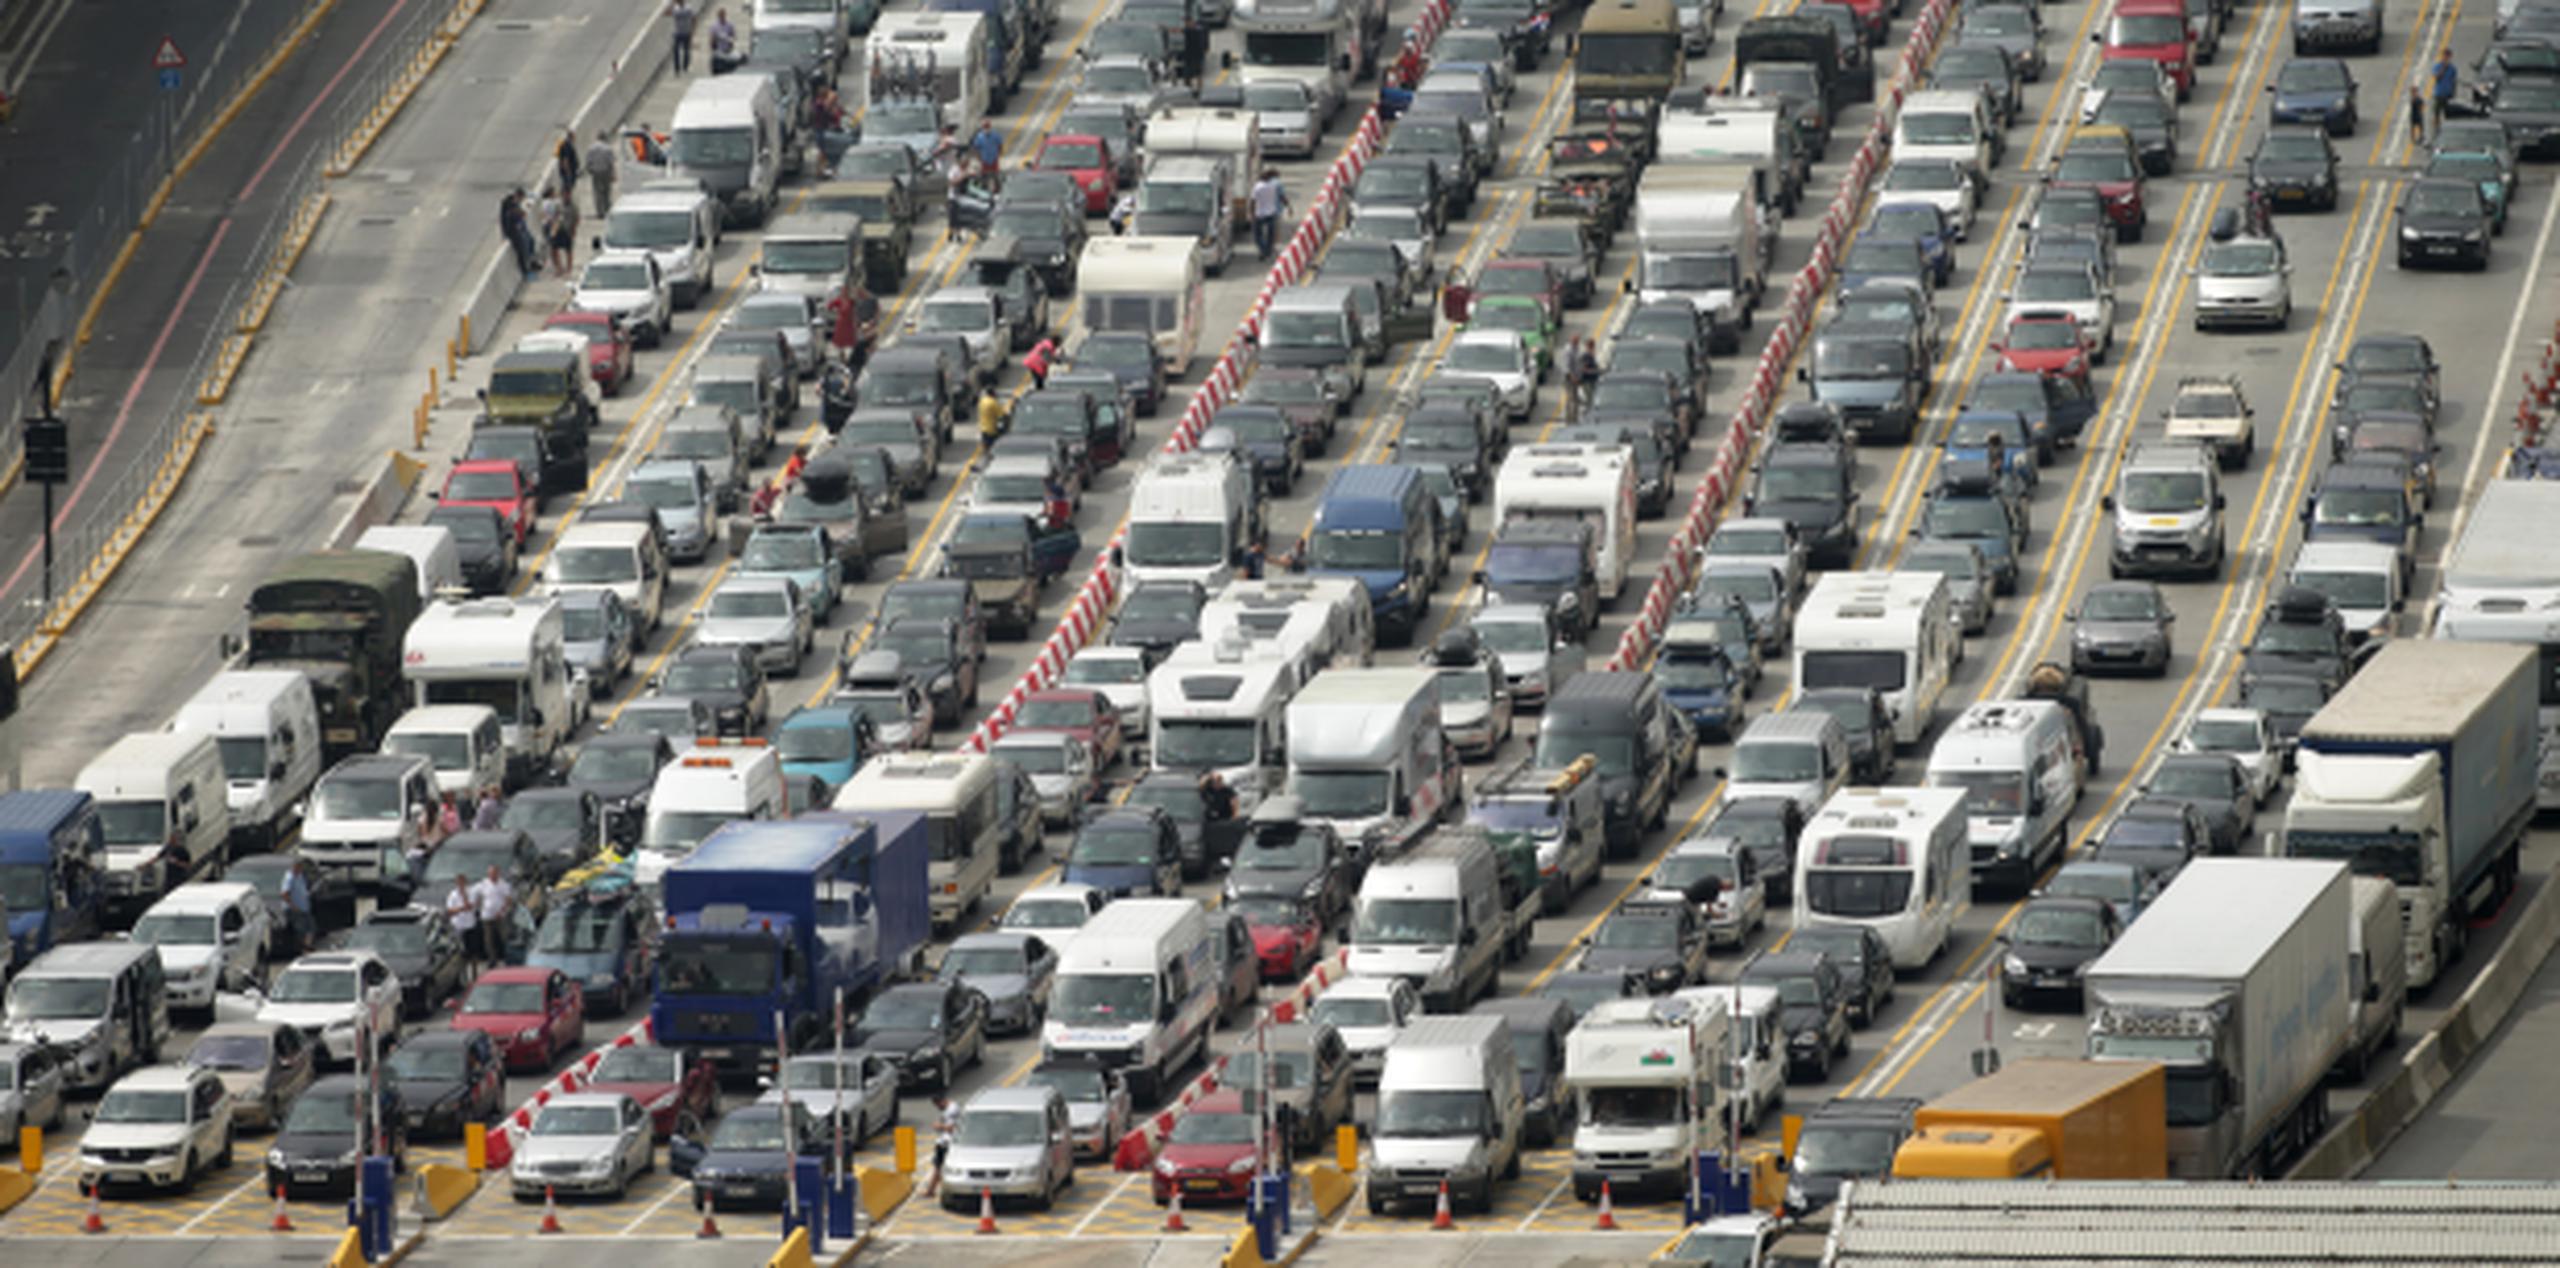 Algunos conductores se quejaron de pasar 15 horas en fila ante la demora en los procedimientos de seguridad. (Yui Mok / PA vía AP)